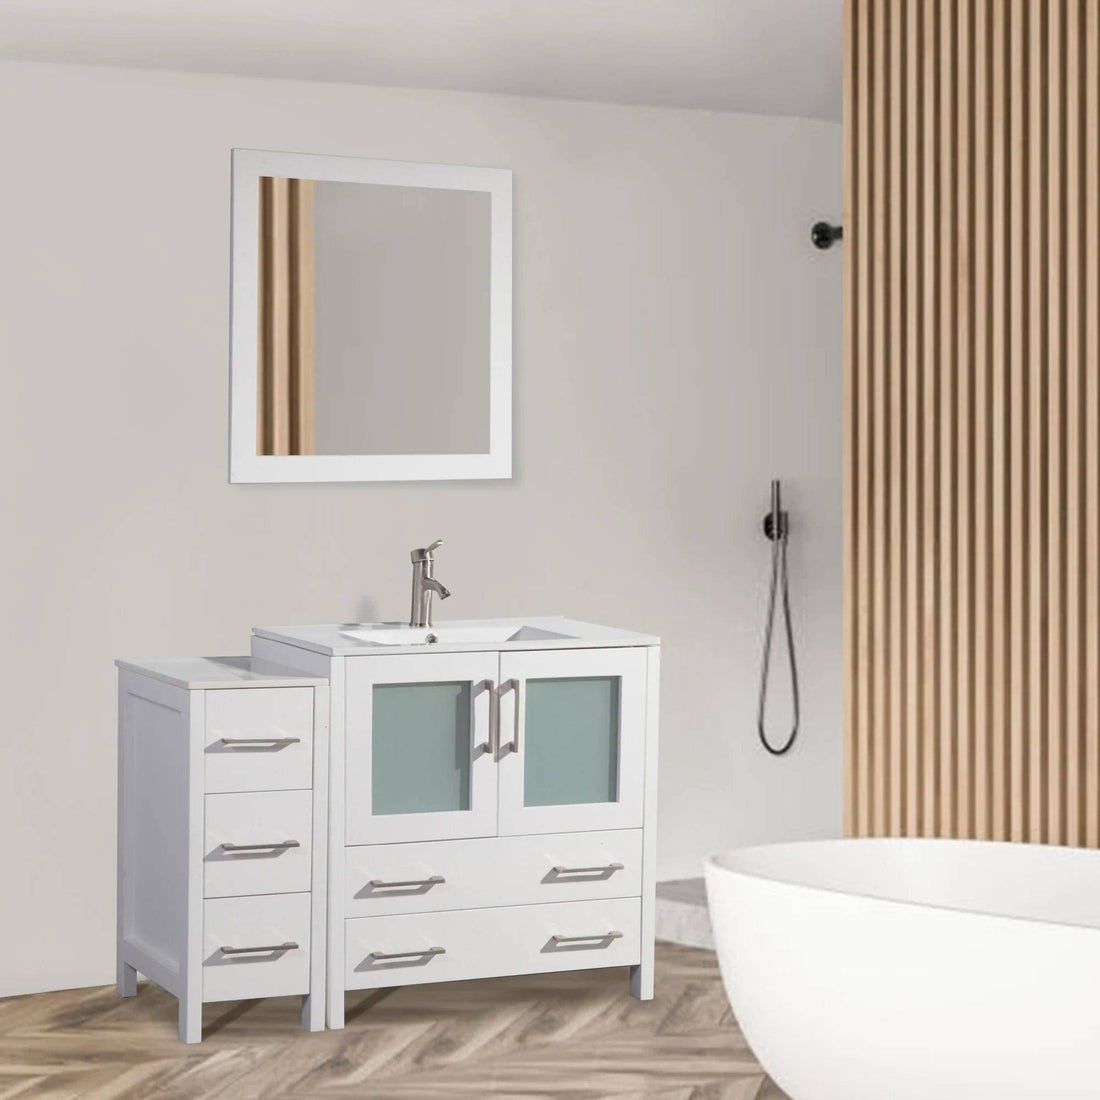 42 in. Single Sink Bathroom Vanity Set in White - Decohub Home